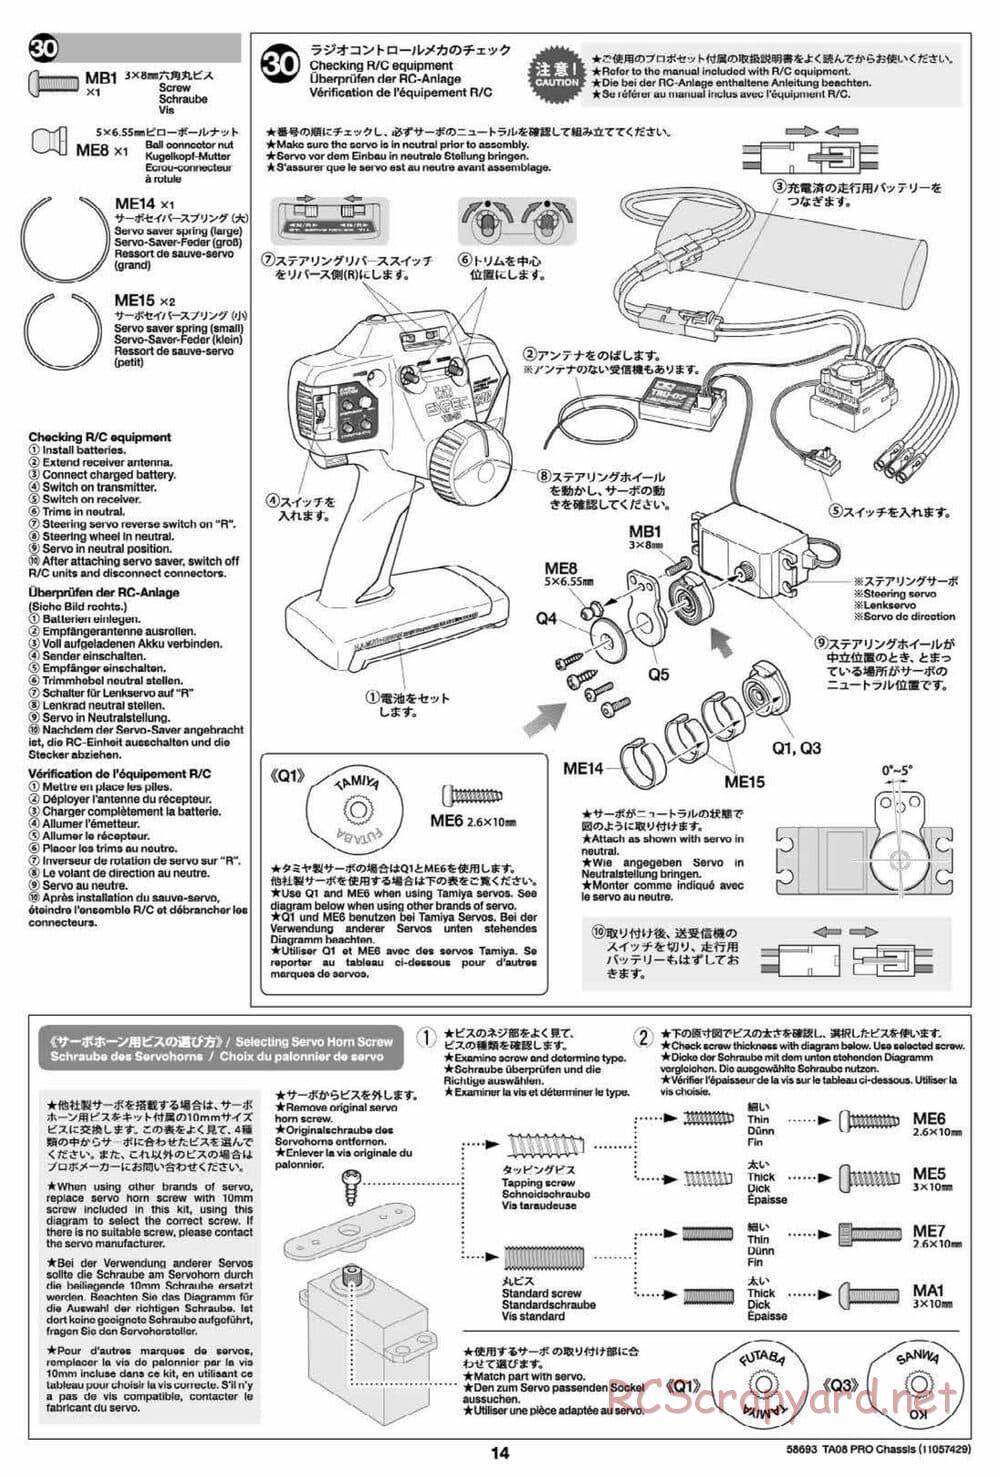 Tamiya - TA08 Pro Chassis - Manual - Page 14